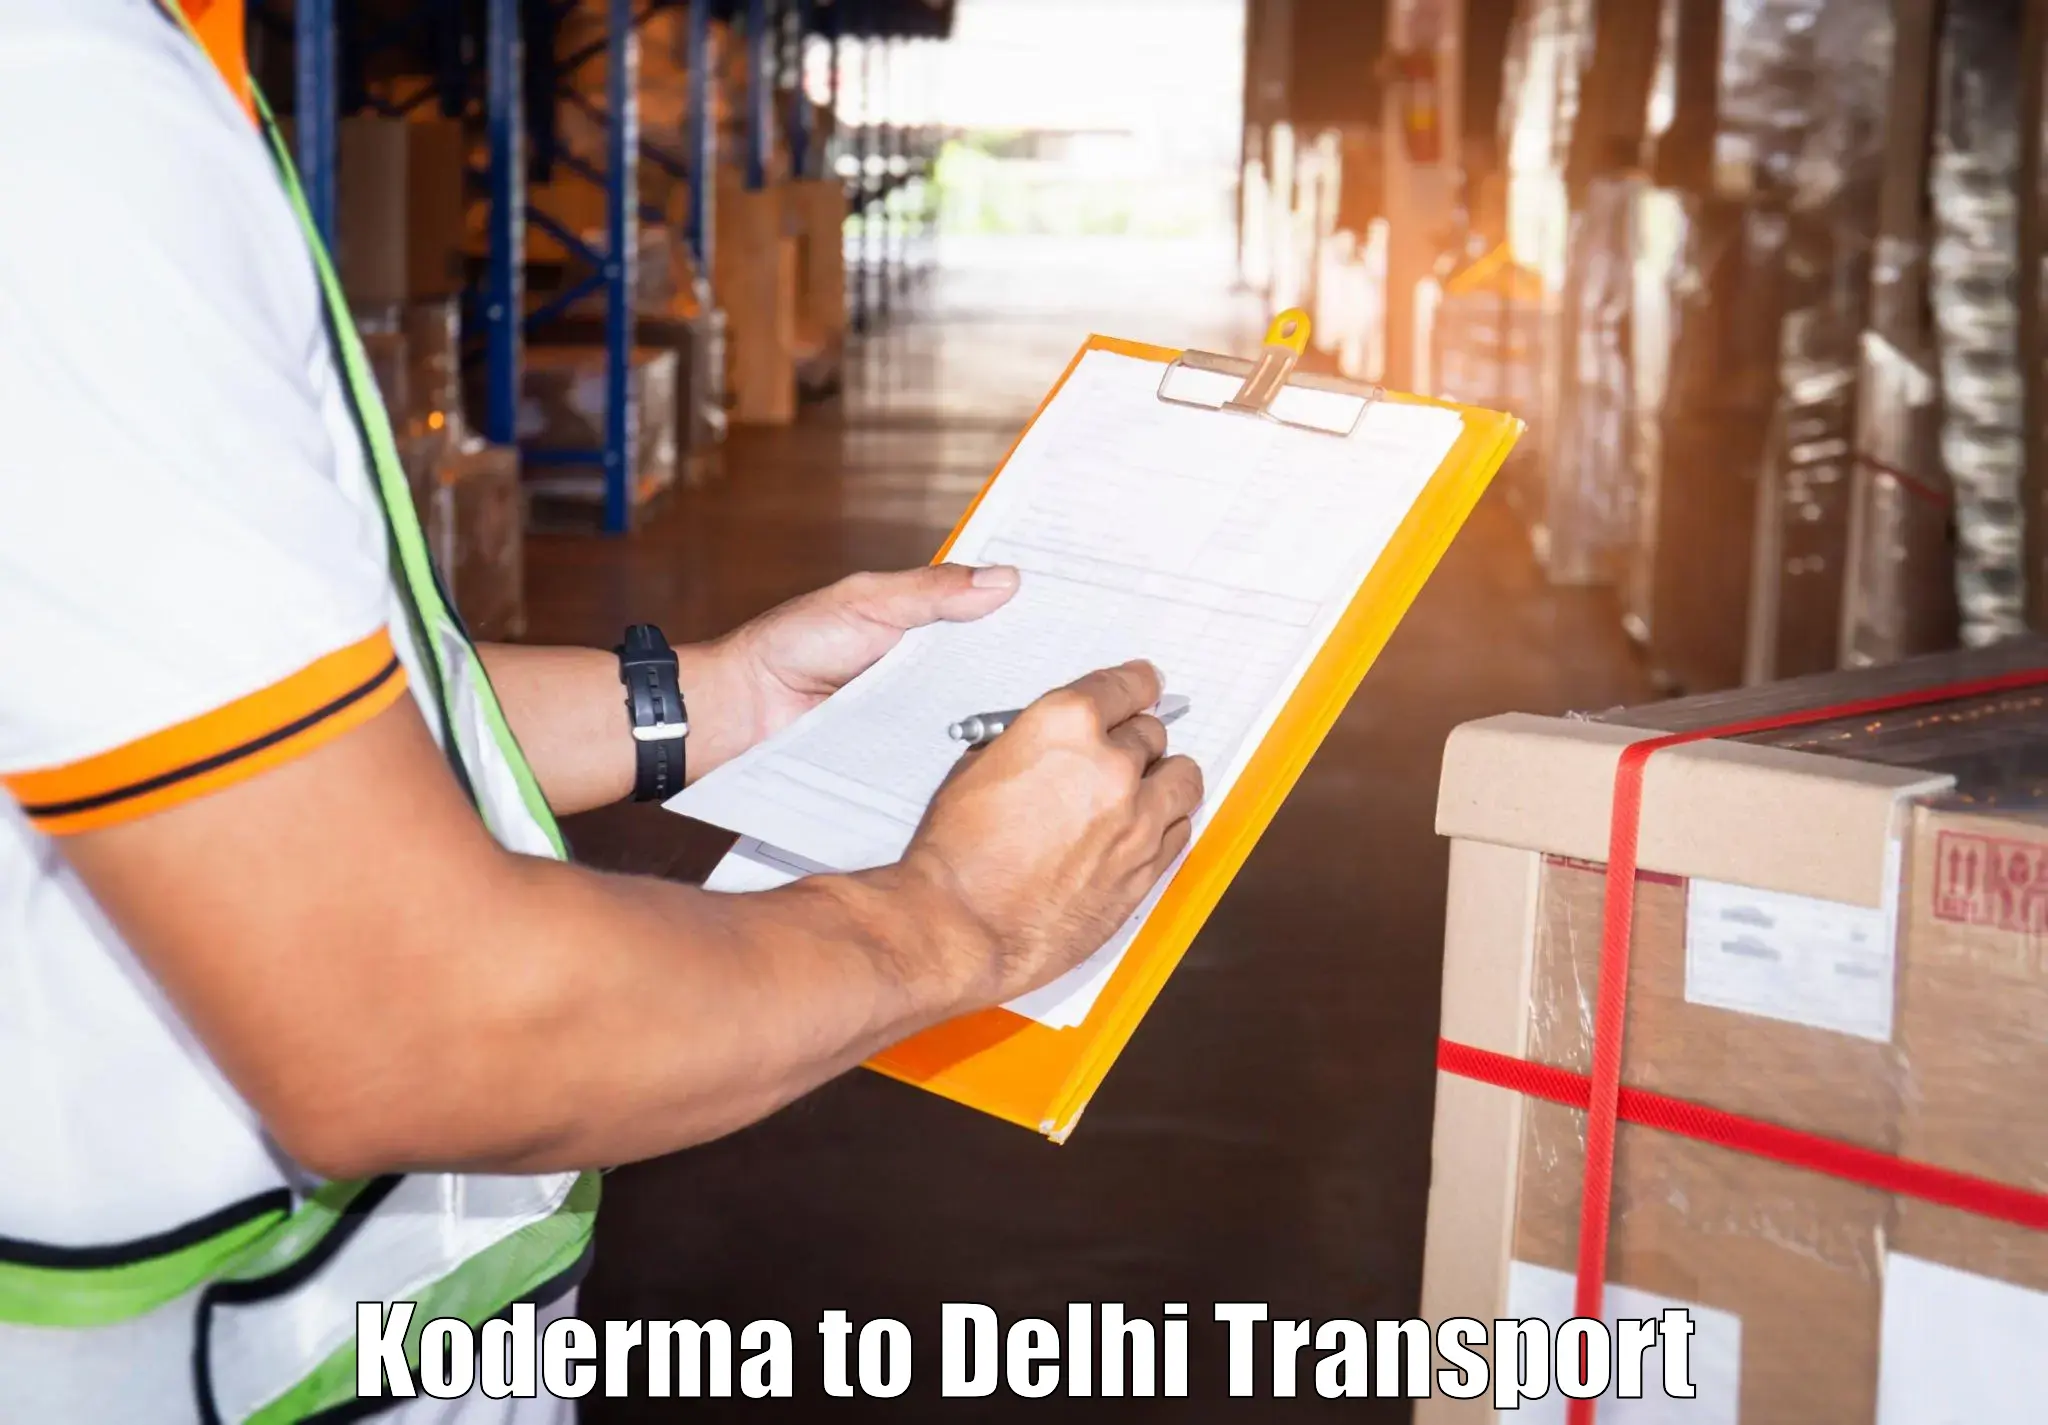 Two wheeler transport services Koderma to Krishna Nagar